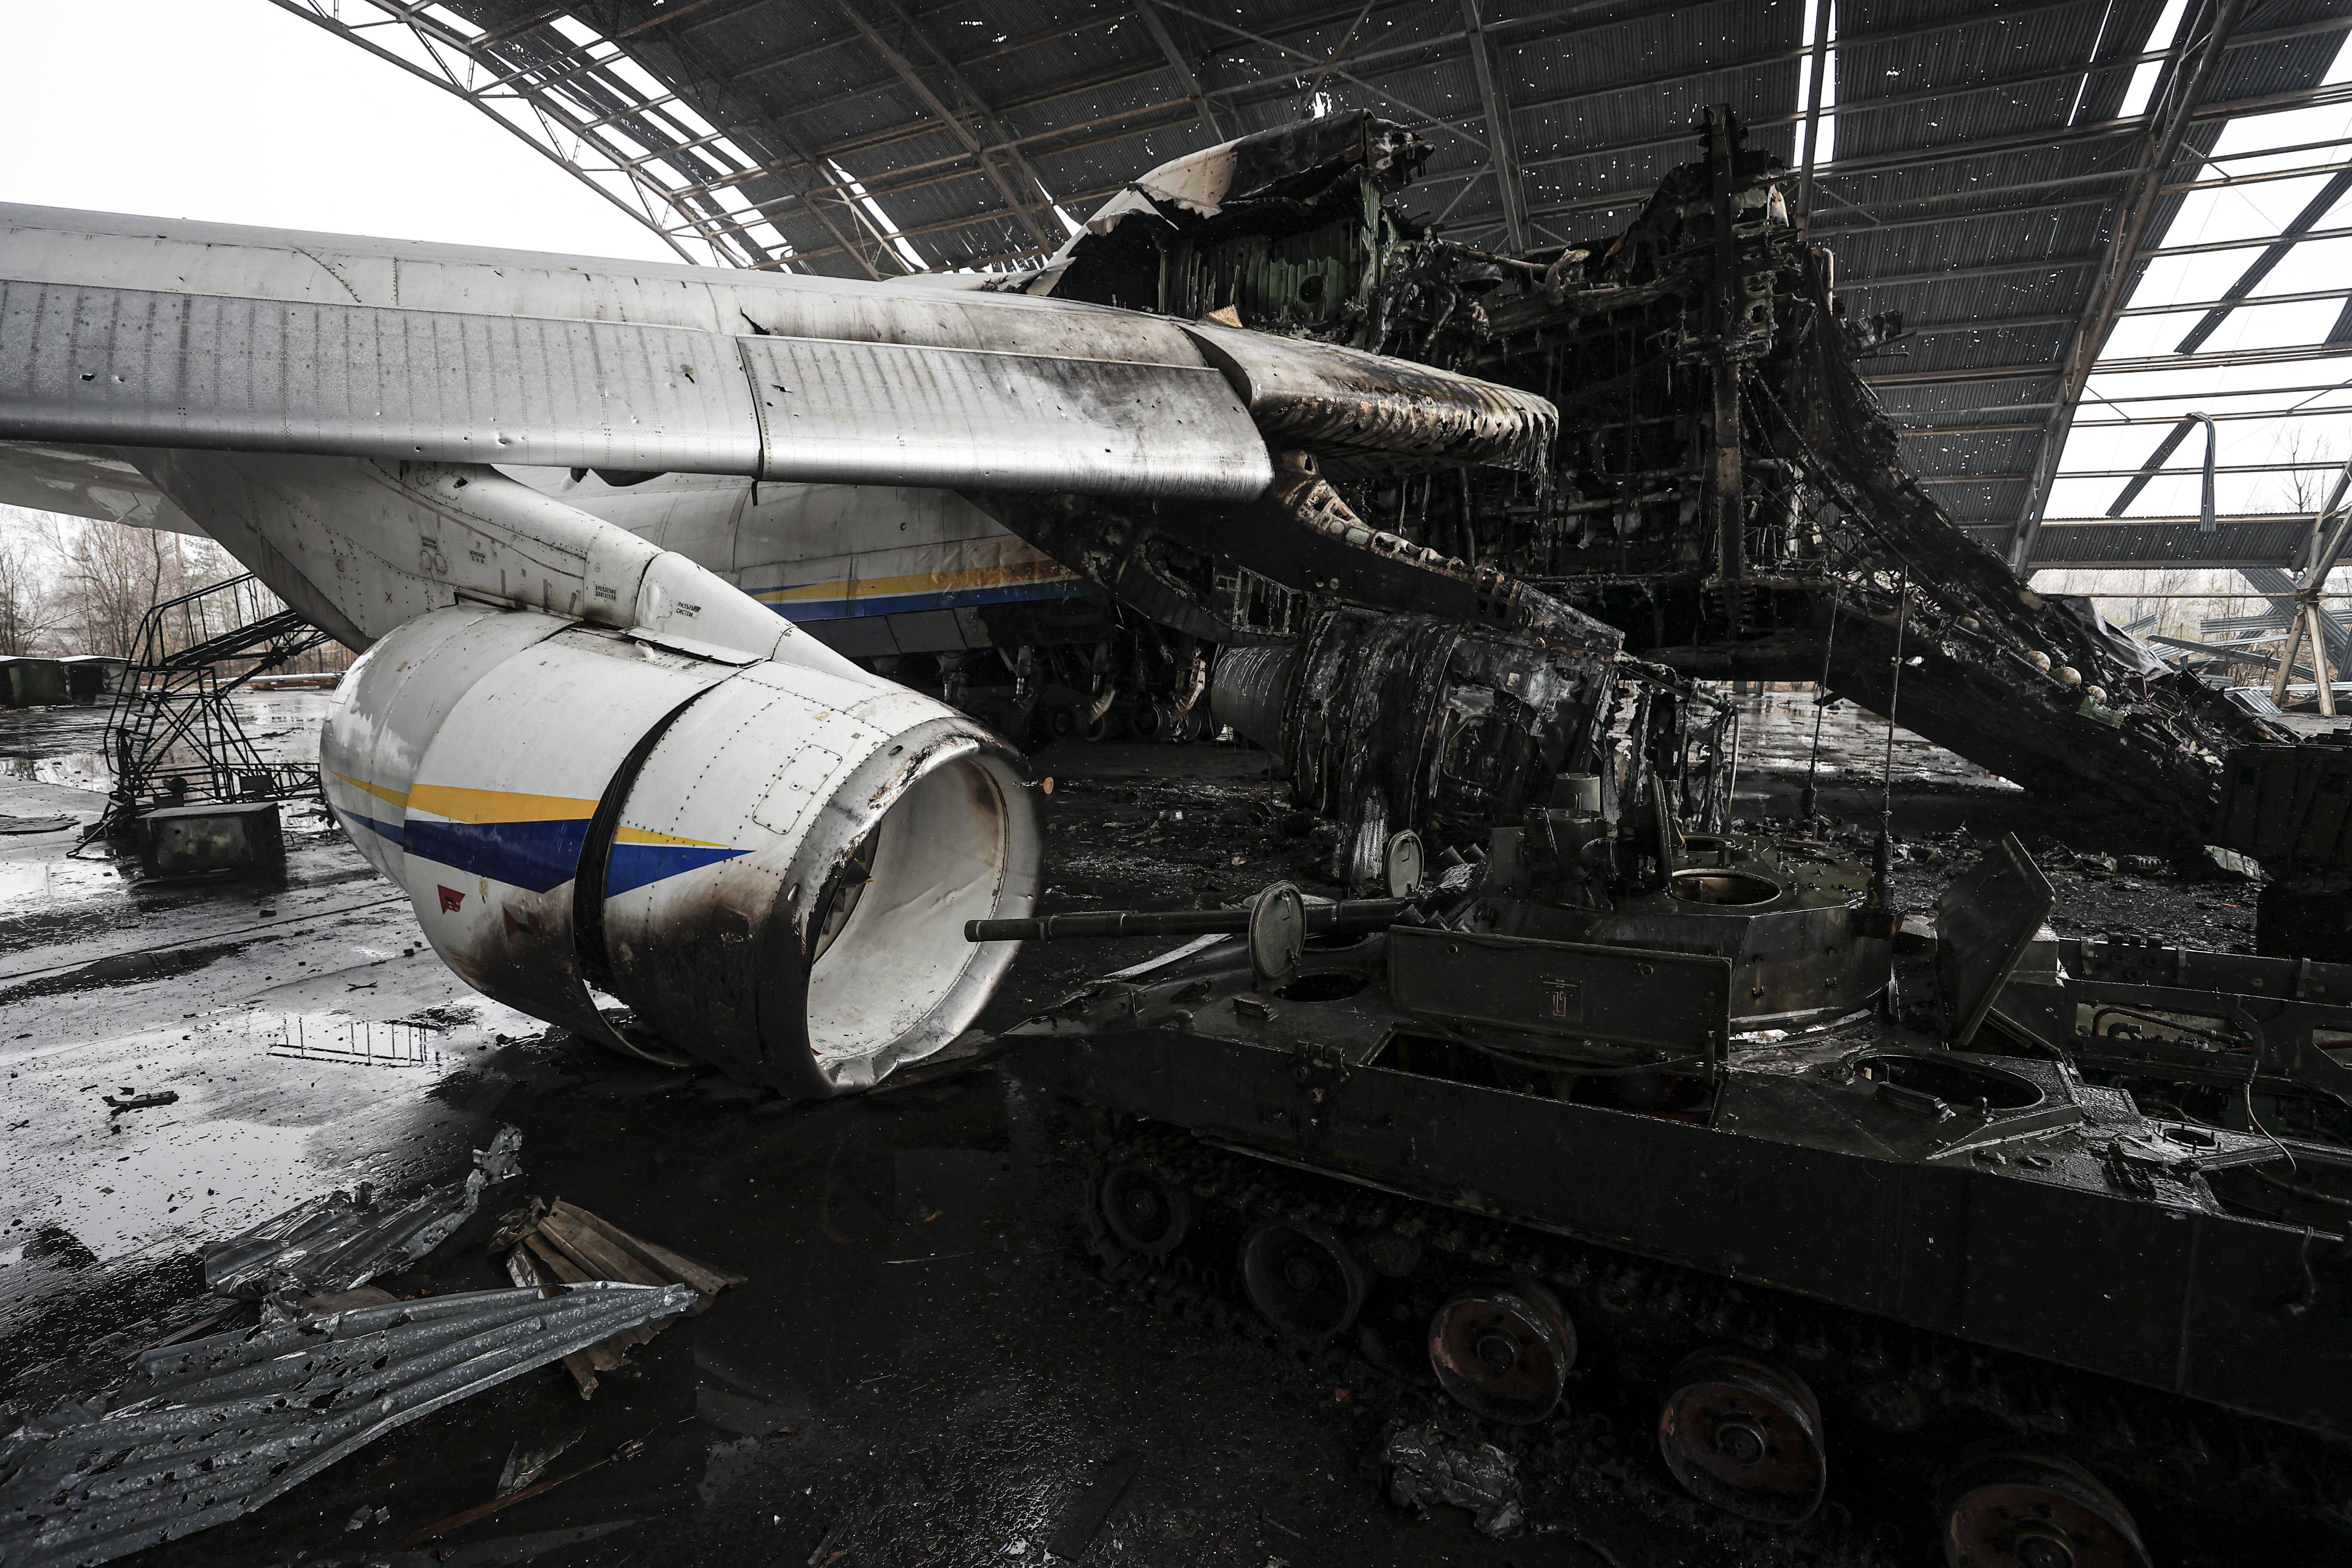 据央视新闻,俄乌冲突爆发后,全球最大运输飞机安